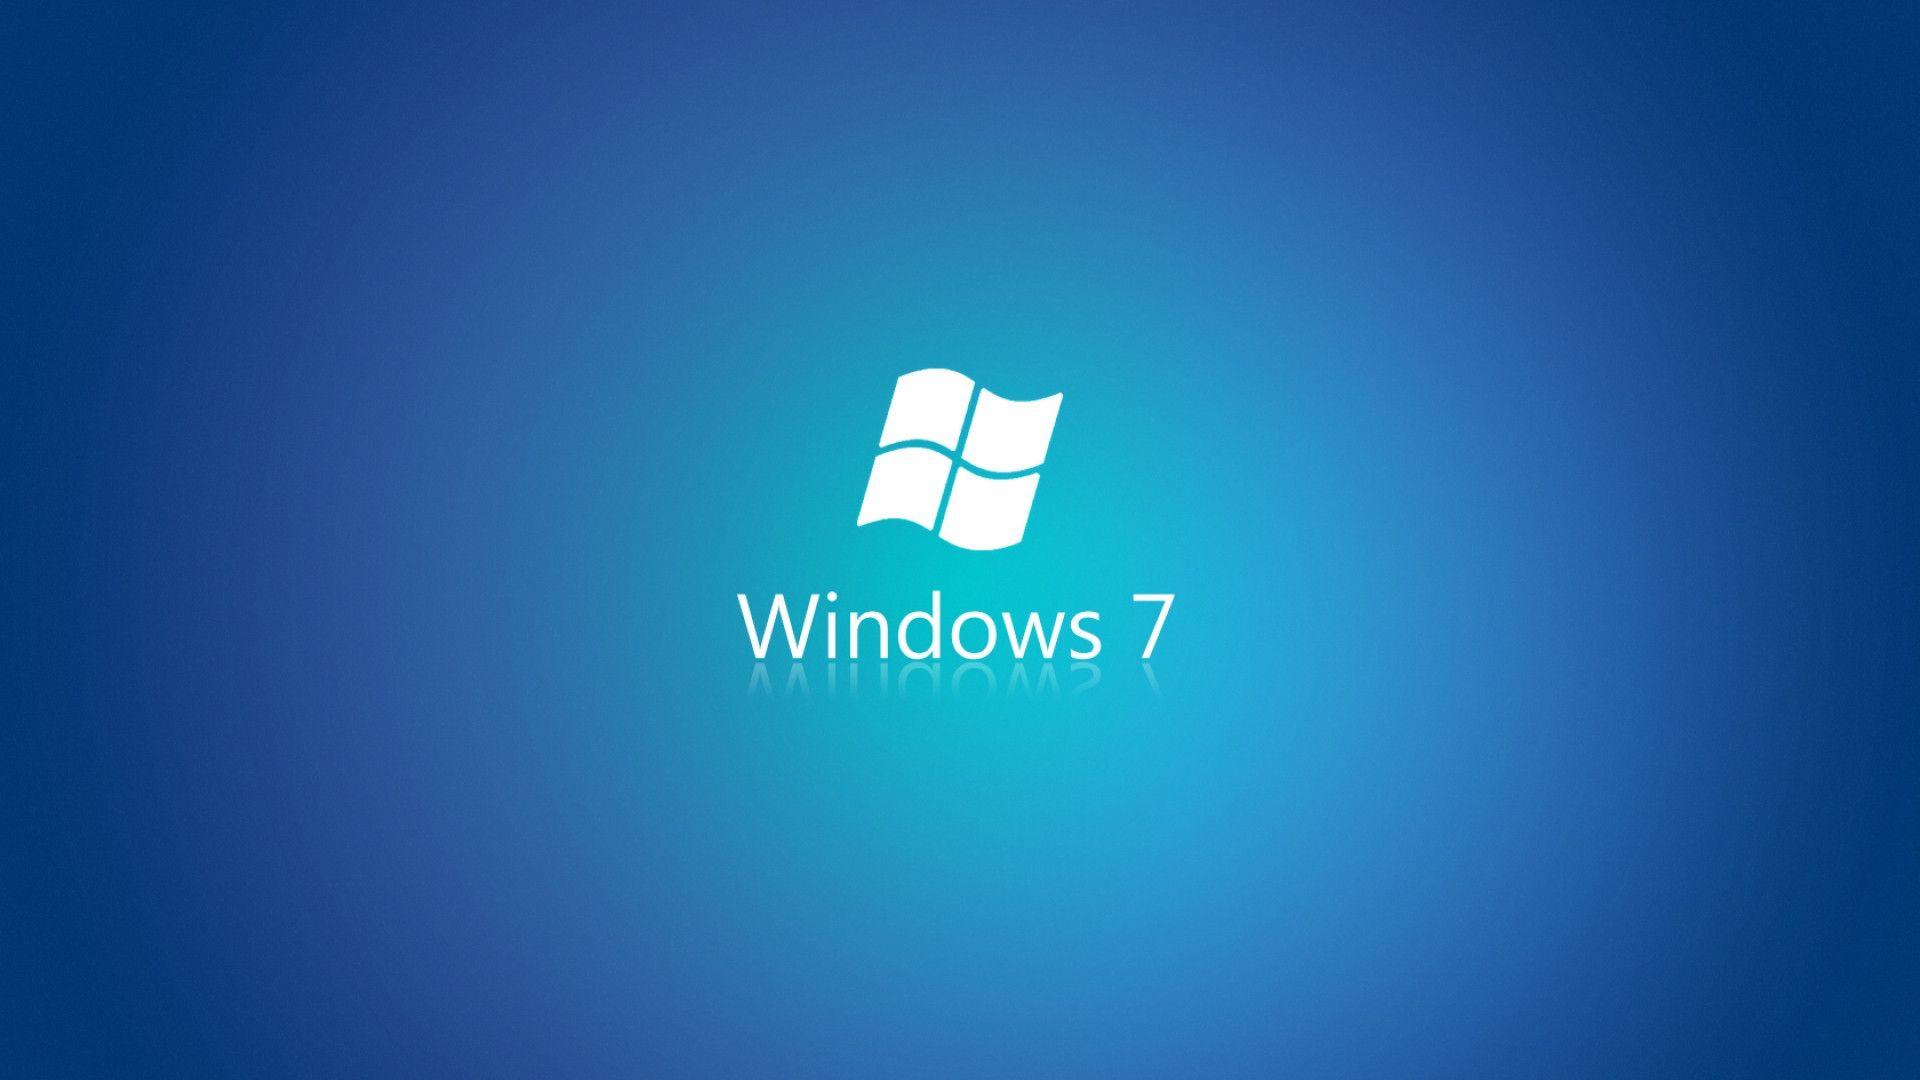 1920x1080 Hình nền logo Windows 7